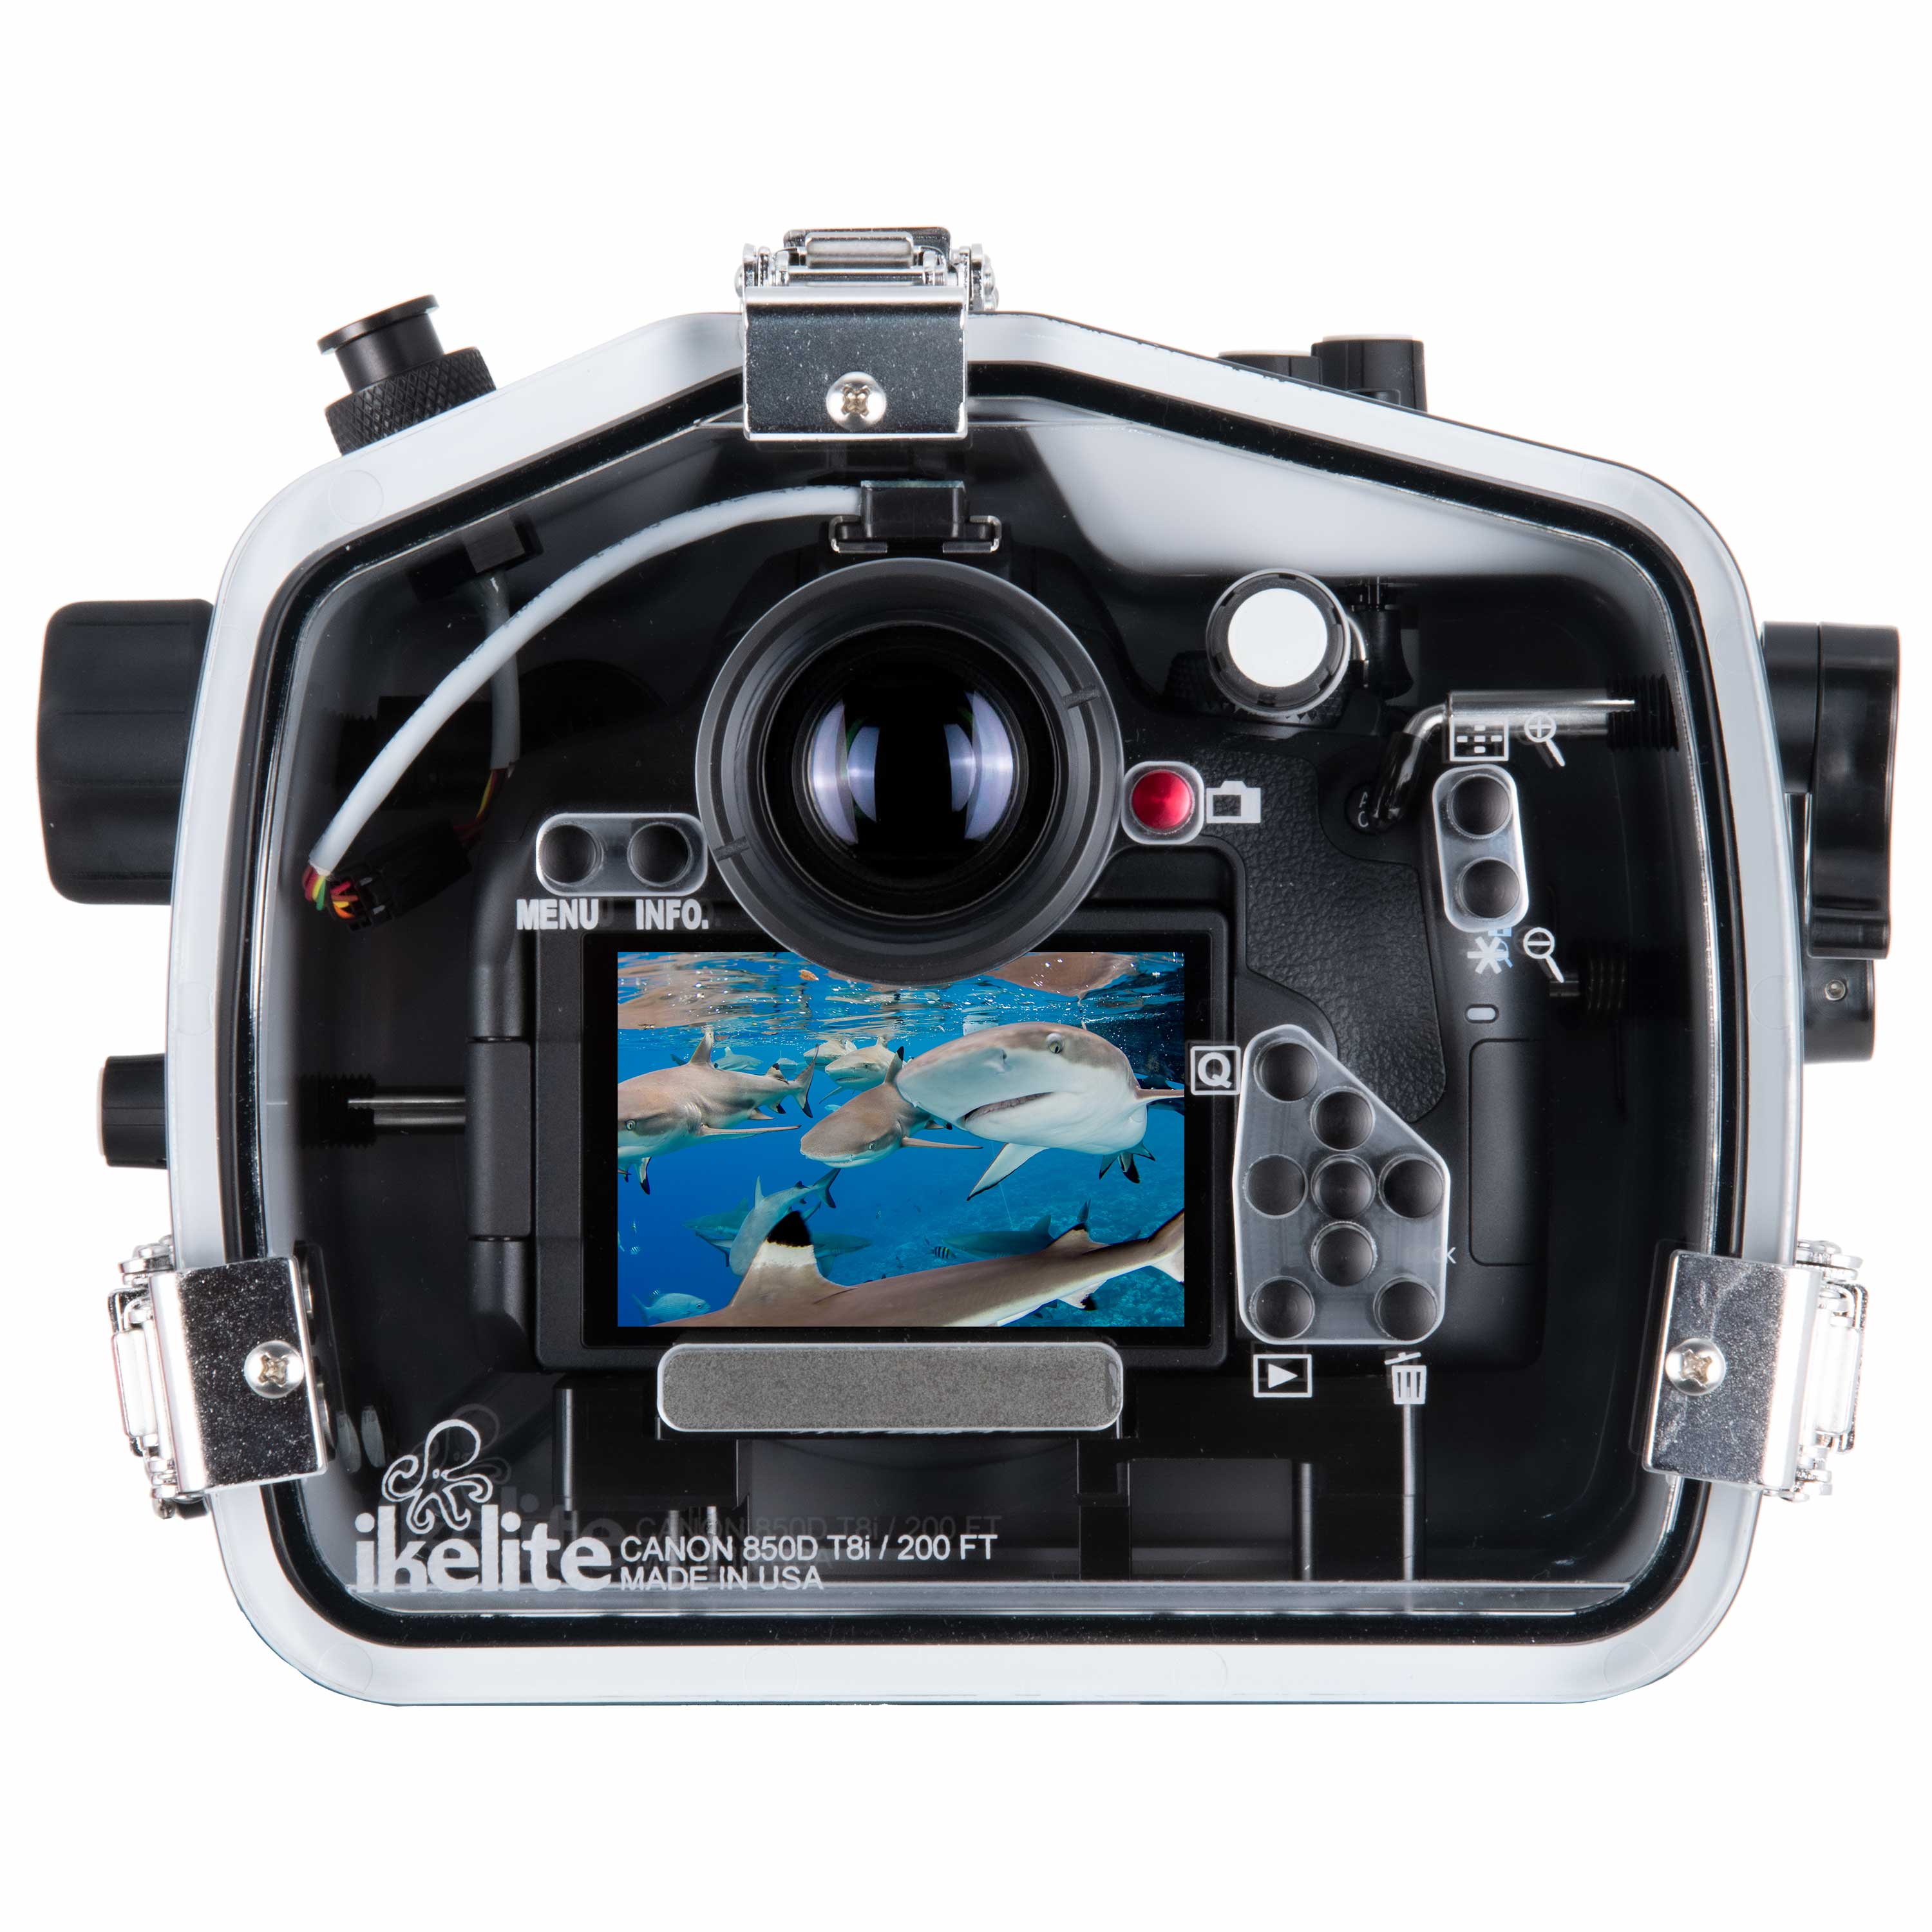 Ikelite 200DL Underwater Housing for Canon EOS 850D Rebel T8i, Kiss X10i DSLR Cameras